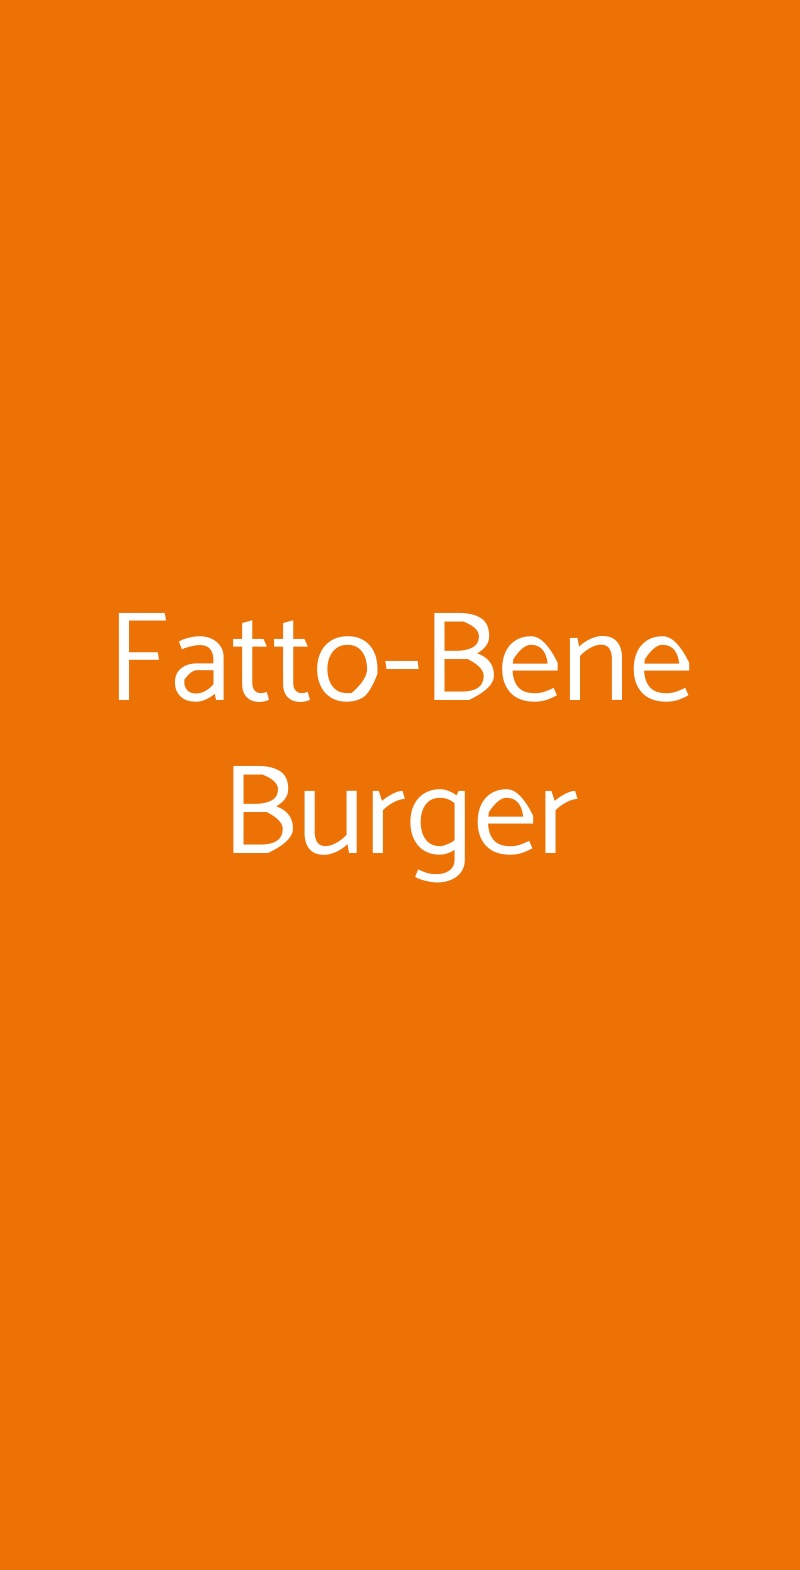 Fatto-Bene Burger Milano menù 1 pagina